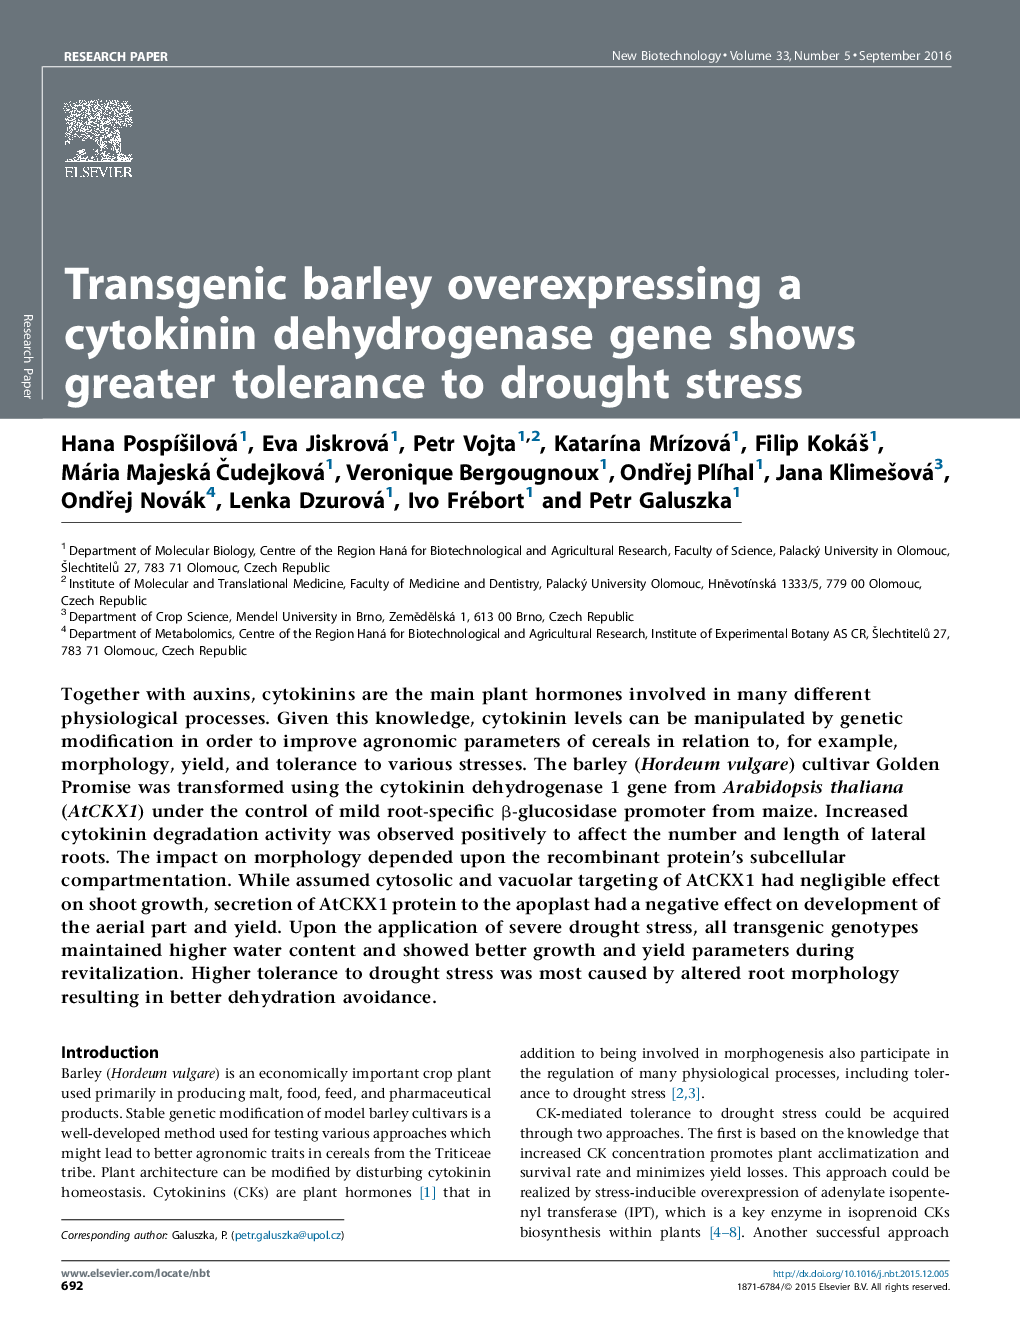 جو مرزه ترانس ژن بیش از حد بیان یک ژن سیتوکنین دهیدروژناز نشان می دهد تحمل بیشتر به تنش خشکی 